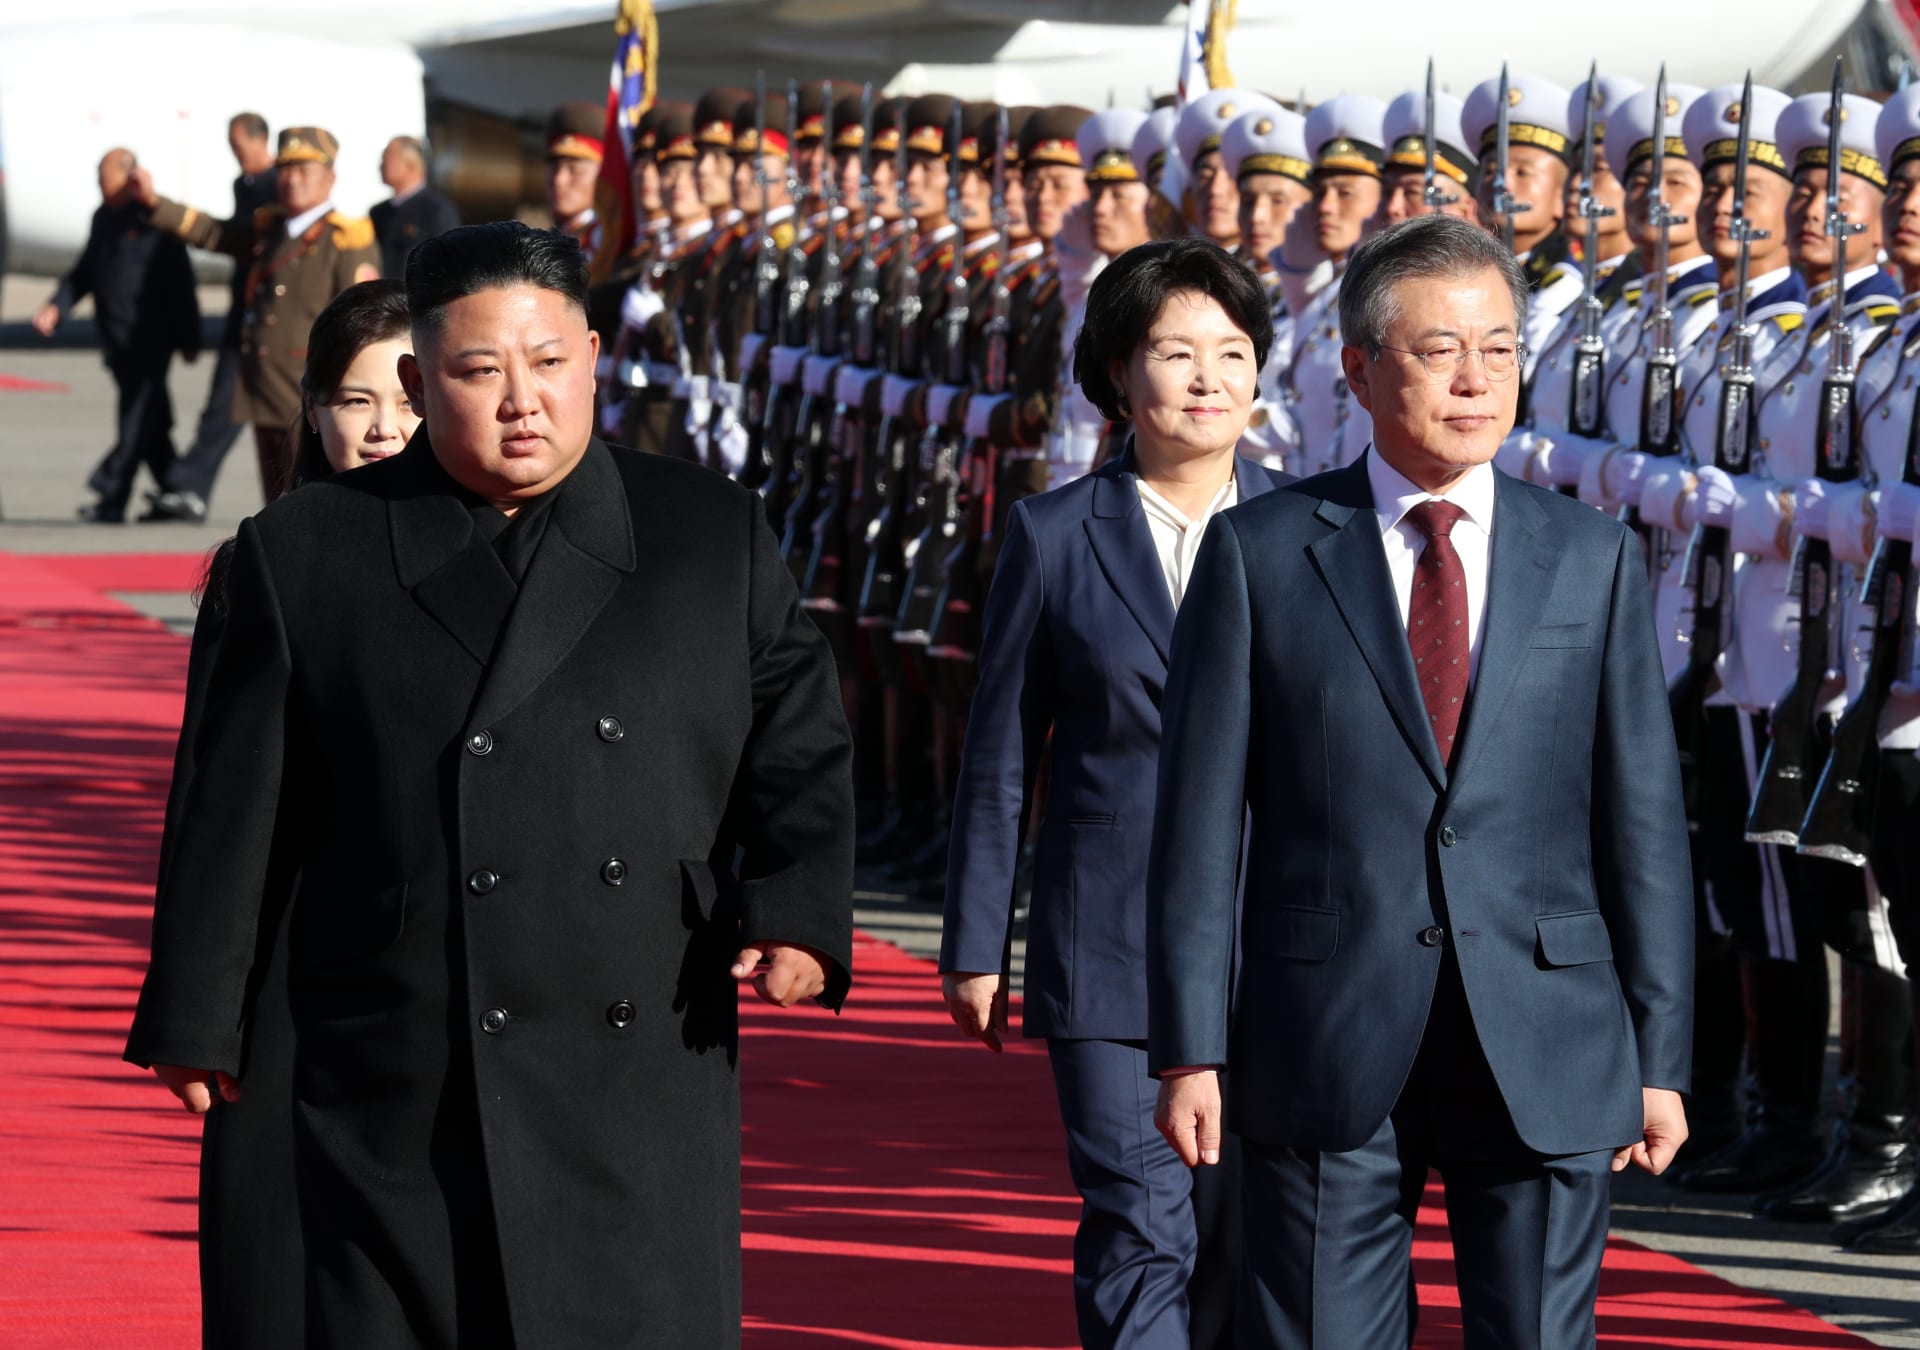 رئيس كوريا الجنوبية يدعو ترامب إلى قمة ثانية مع كيم جونغ أون